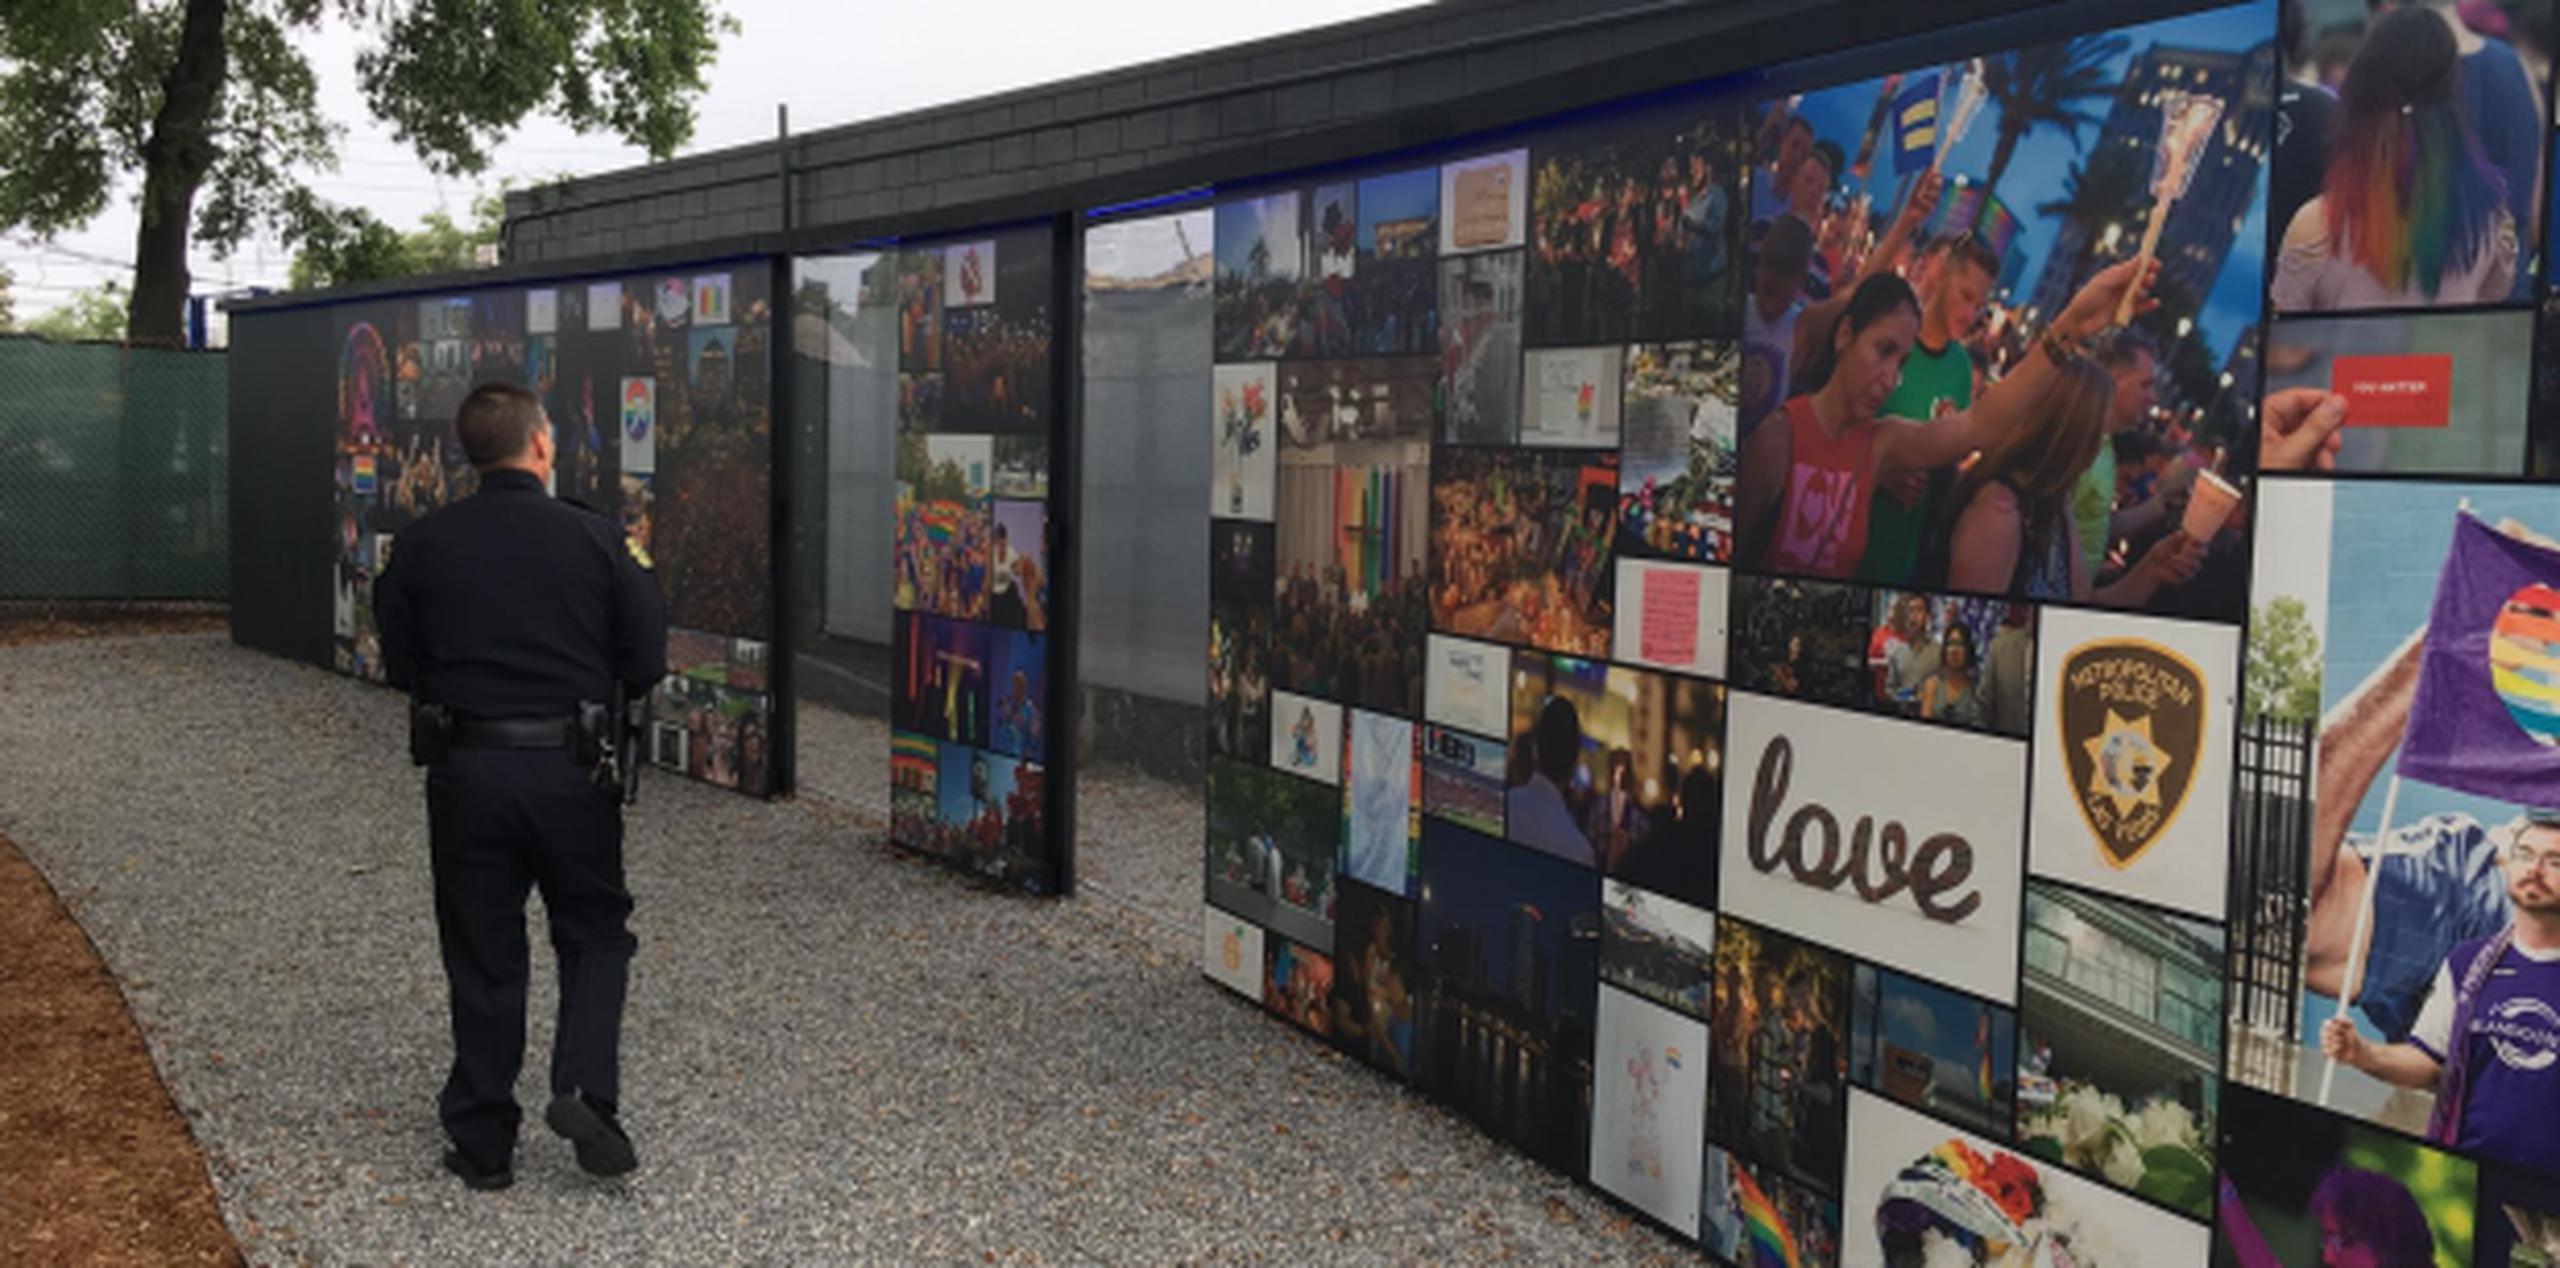 Pulse ahora consta de amplios jardines, una pared con los nombres de las 49 víctimas grabados, y un muro para dejar ofrendas y flores. (Orlando Police Department)